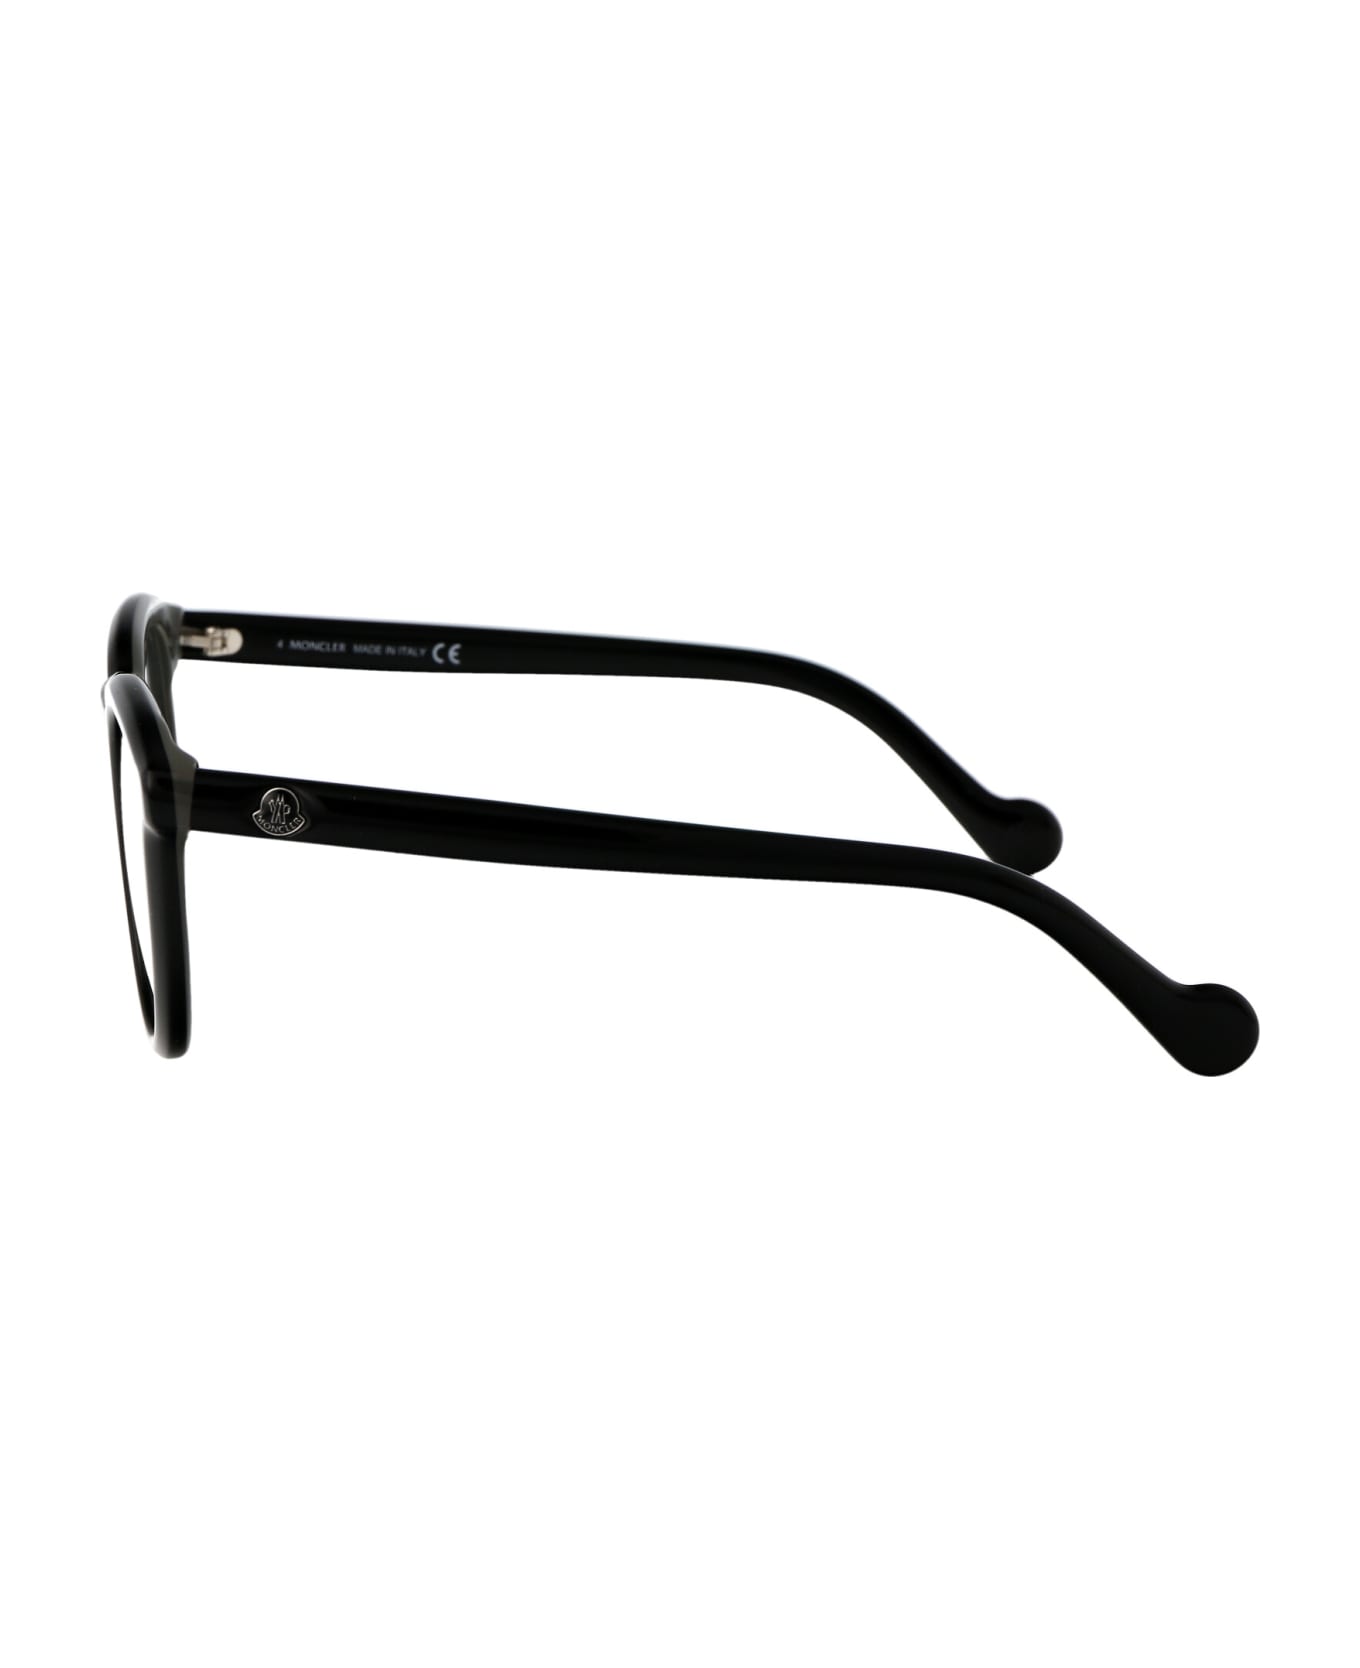 Moncler Eyewear Ml5149/v Glasses - 001 BLACK